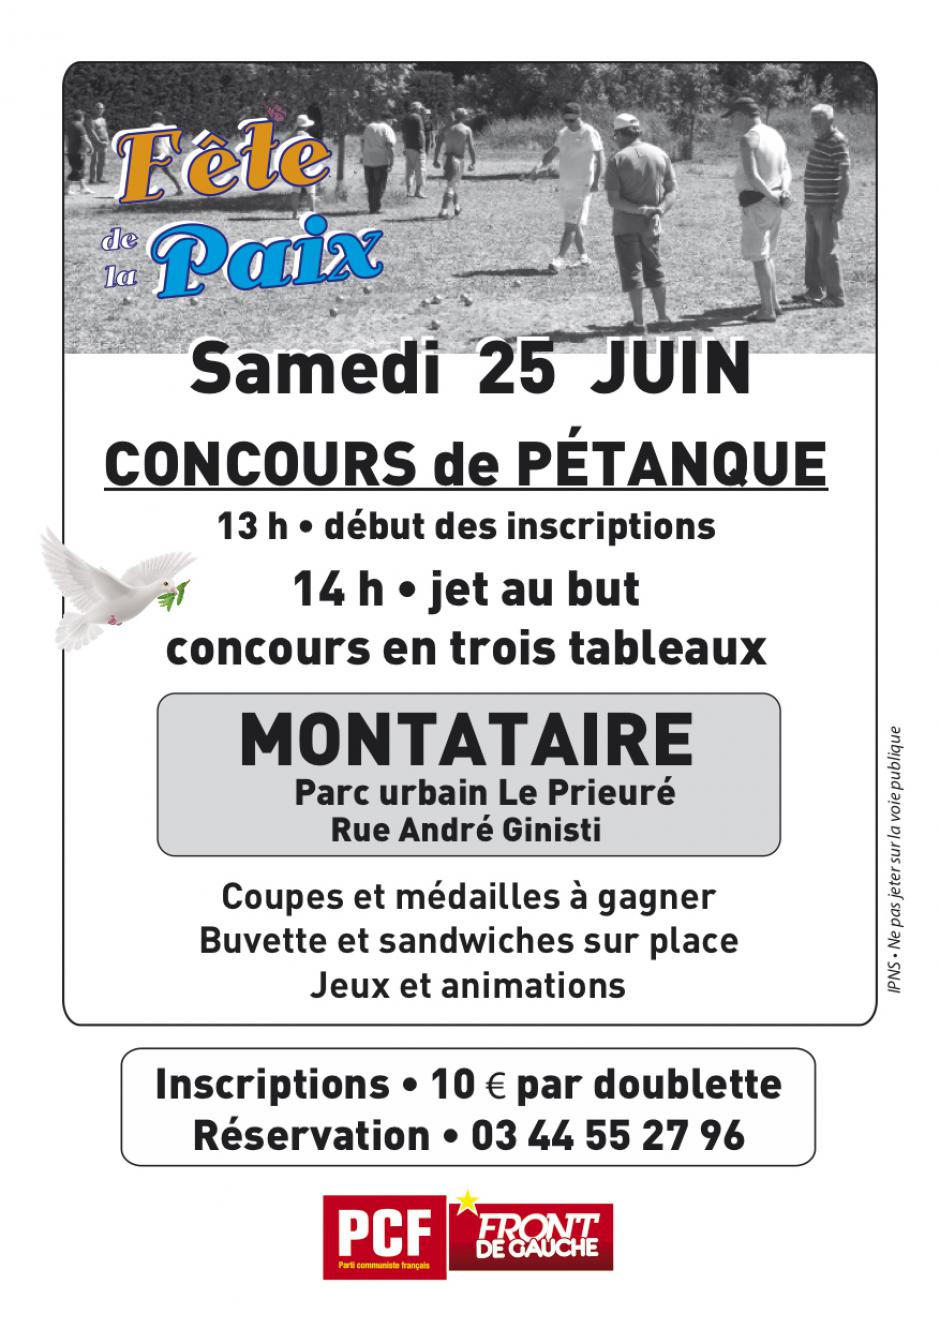 Flyer « Concours de pétanque » - PCF Oise, 27 mai 2016